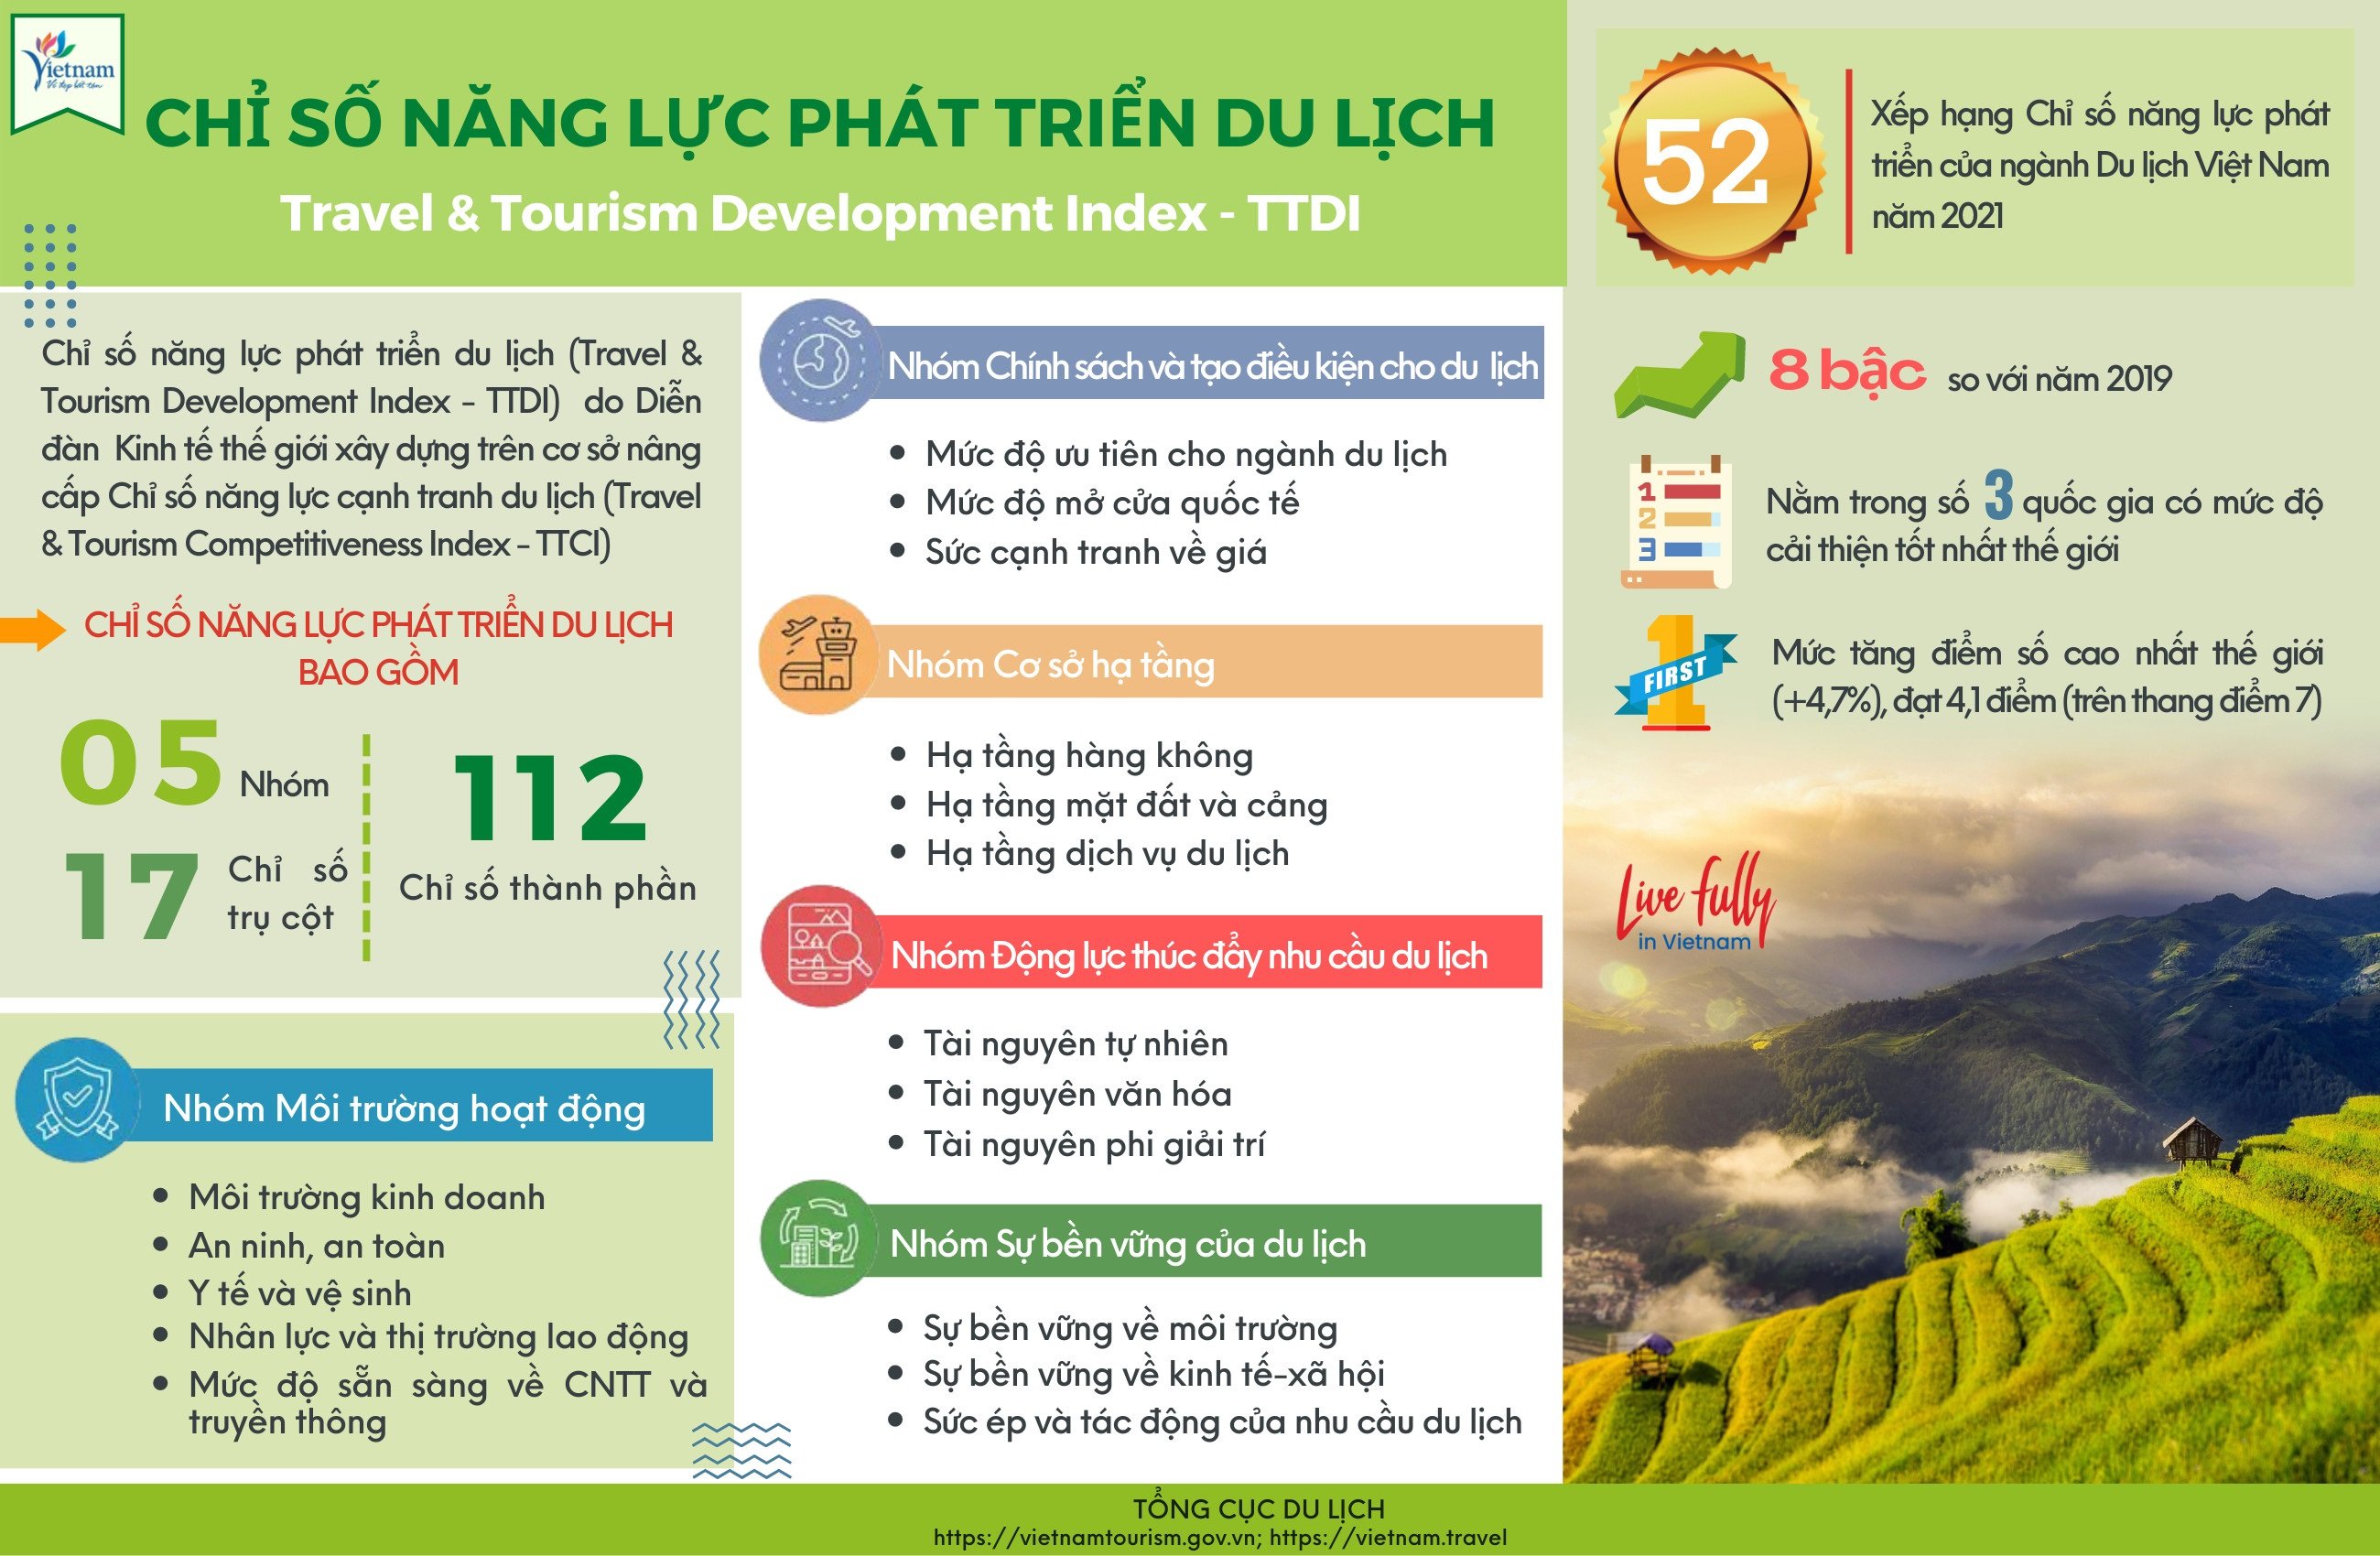 Chỉ số năng lực phát triển du lịch Việt Nam tăng mạnh - 2